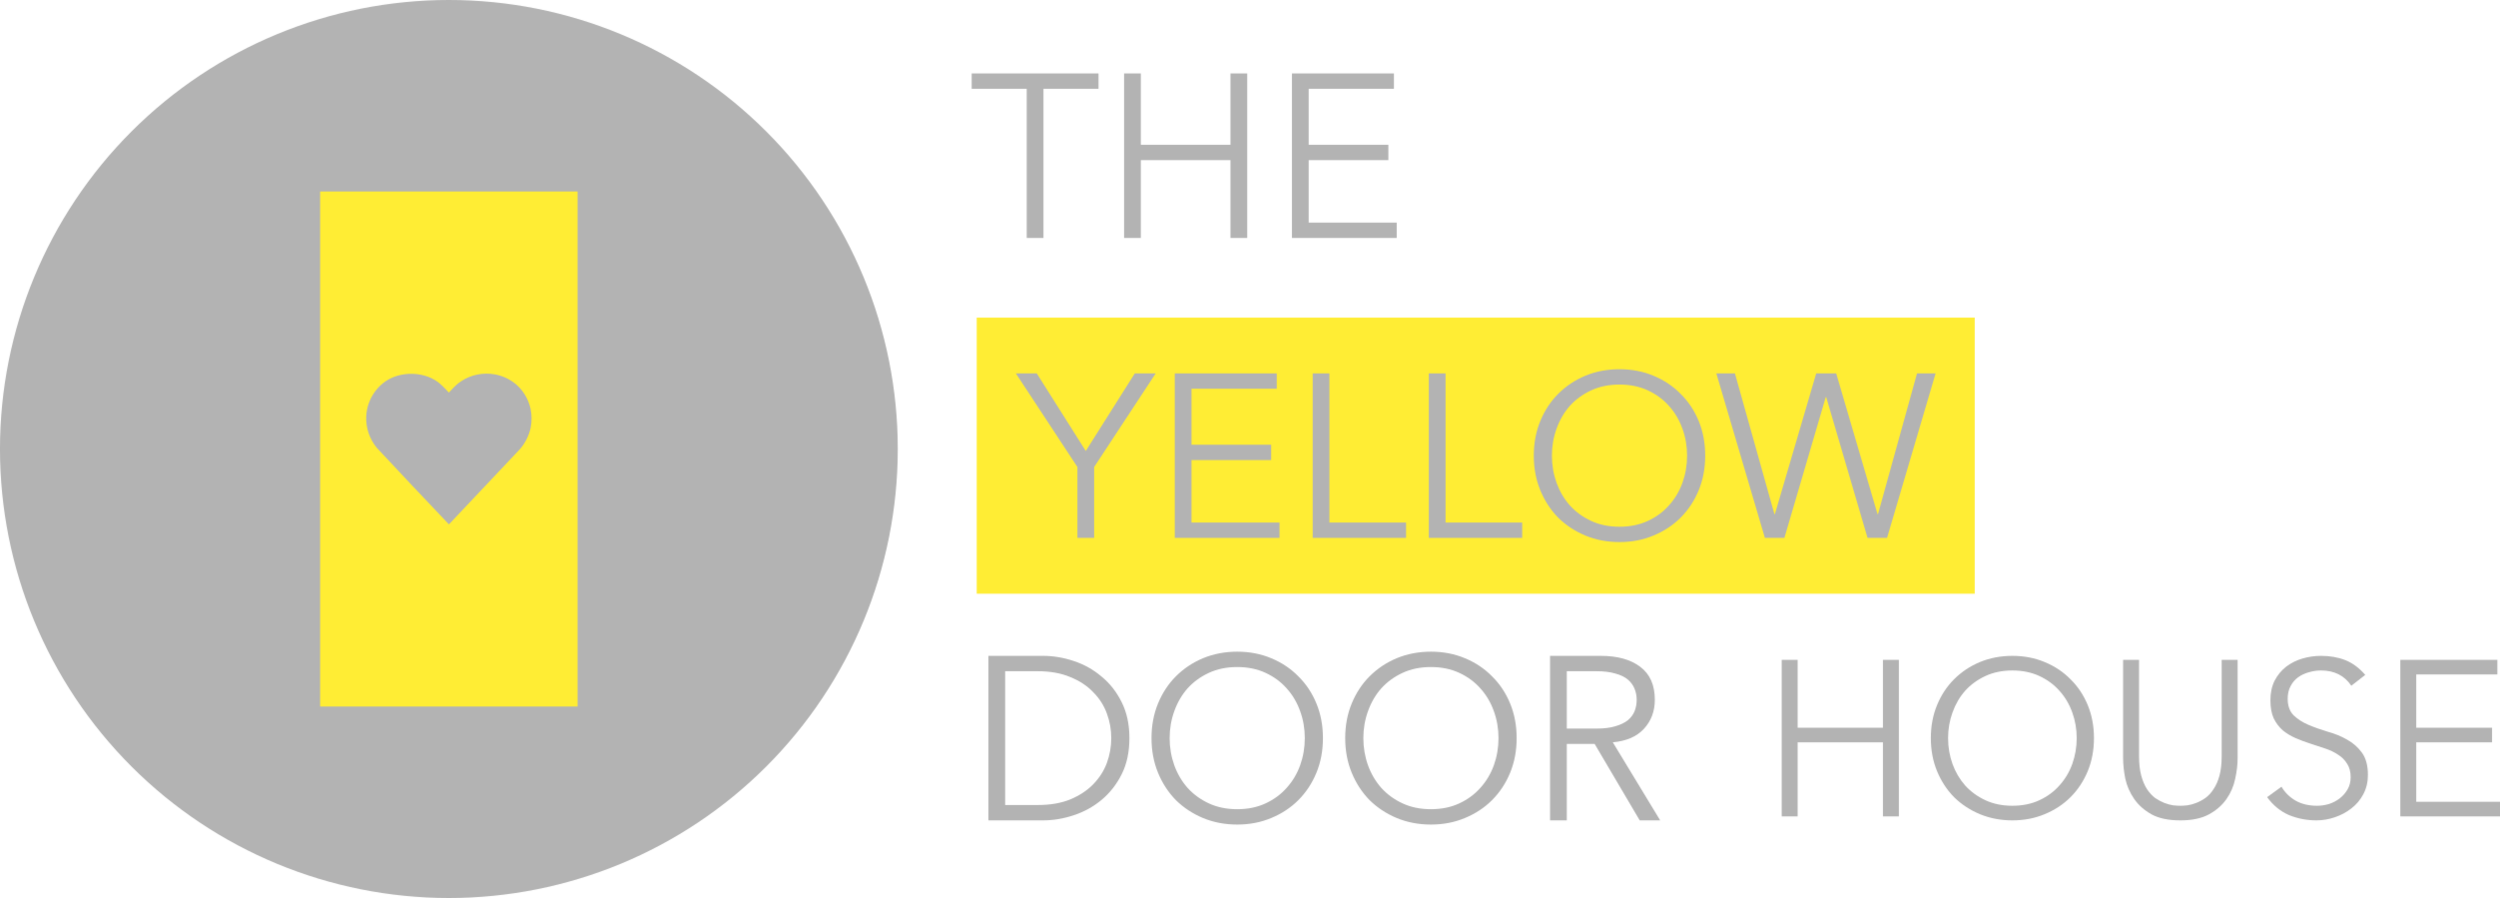 The yellow door house 